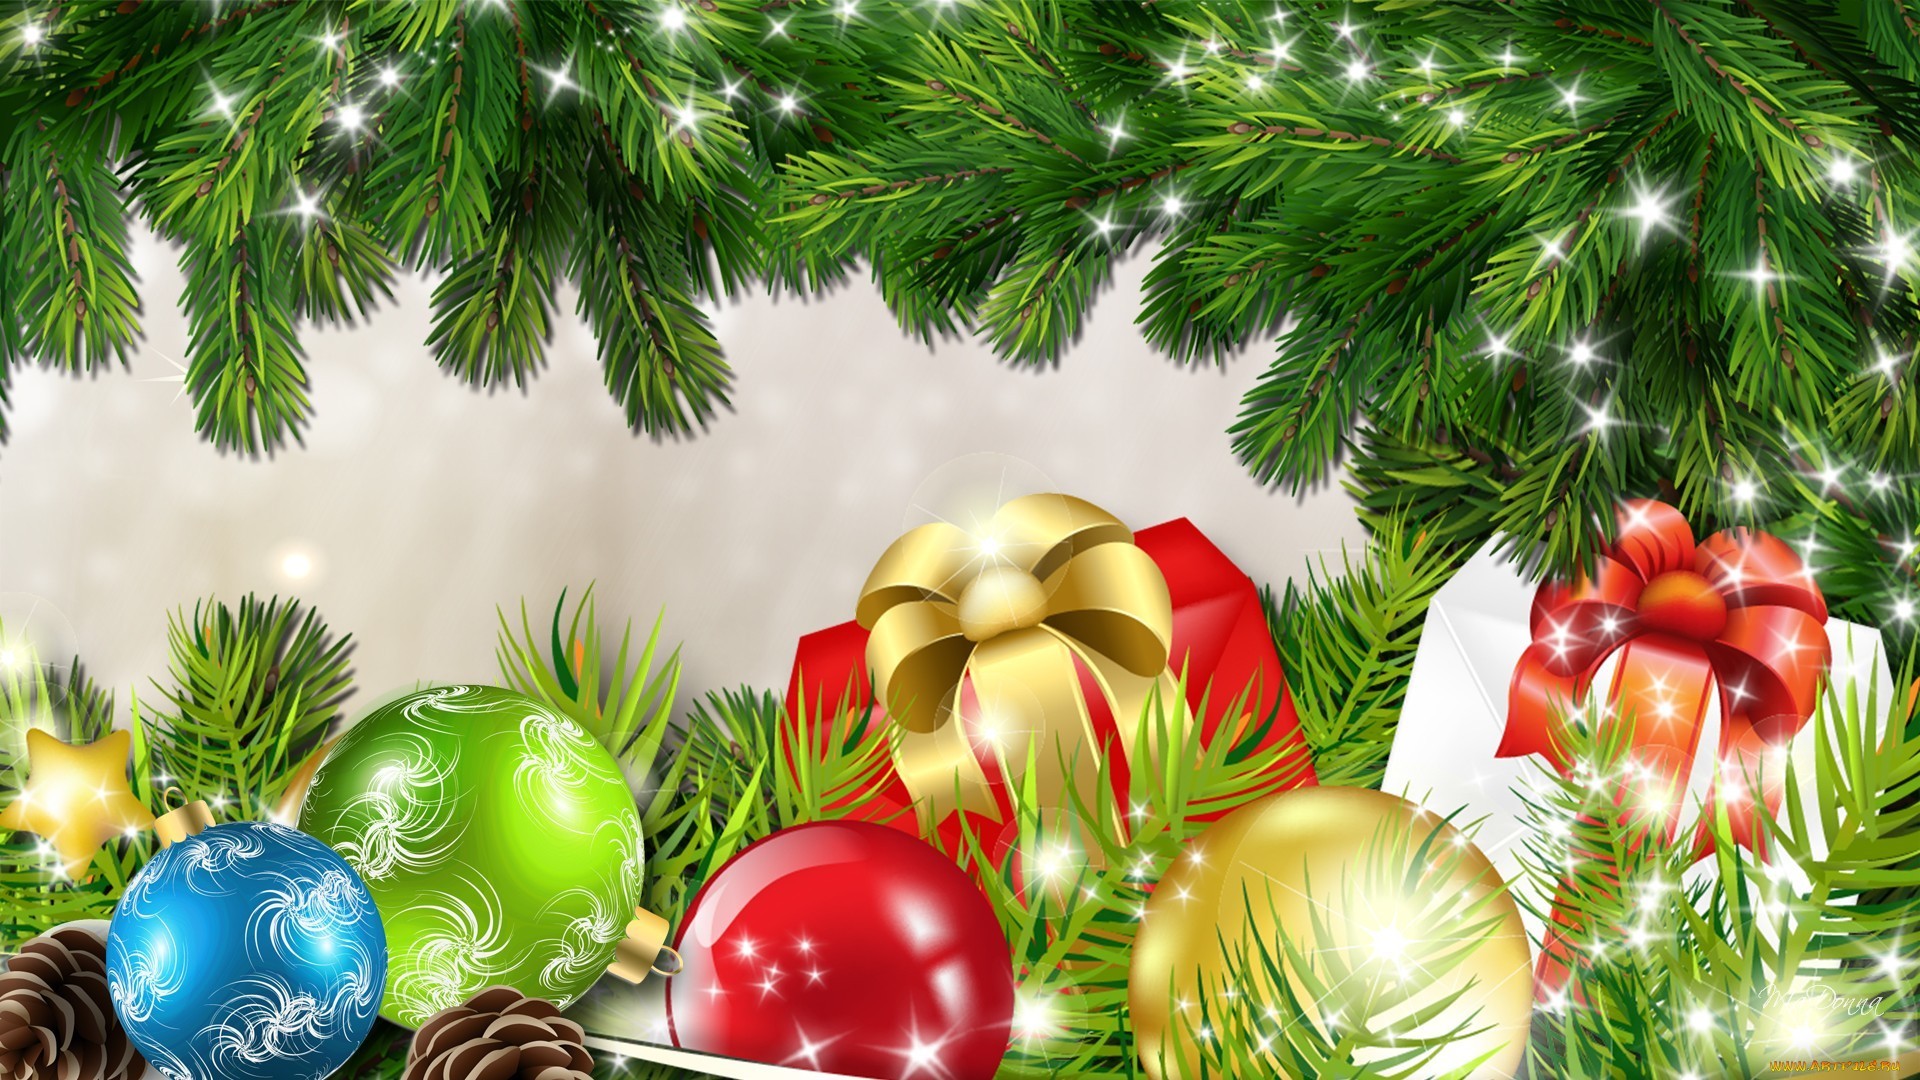 Скачать обои бесплатно Рождество (Christmas Xmas), Фон, Новый Год (New Year), Праздники картинка на рабочий стол ПК